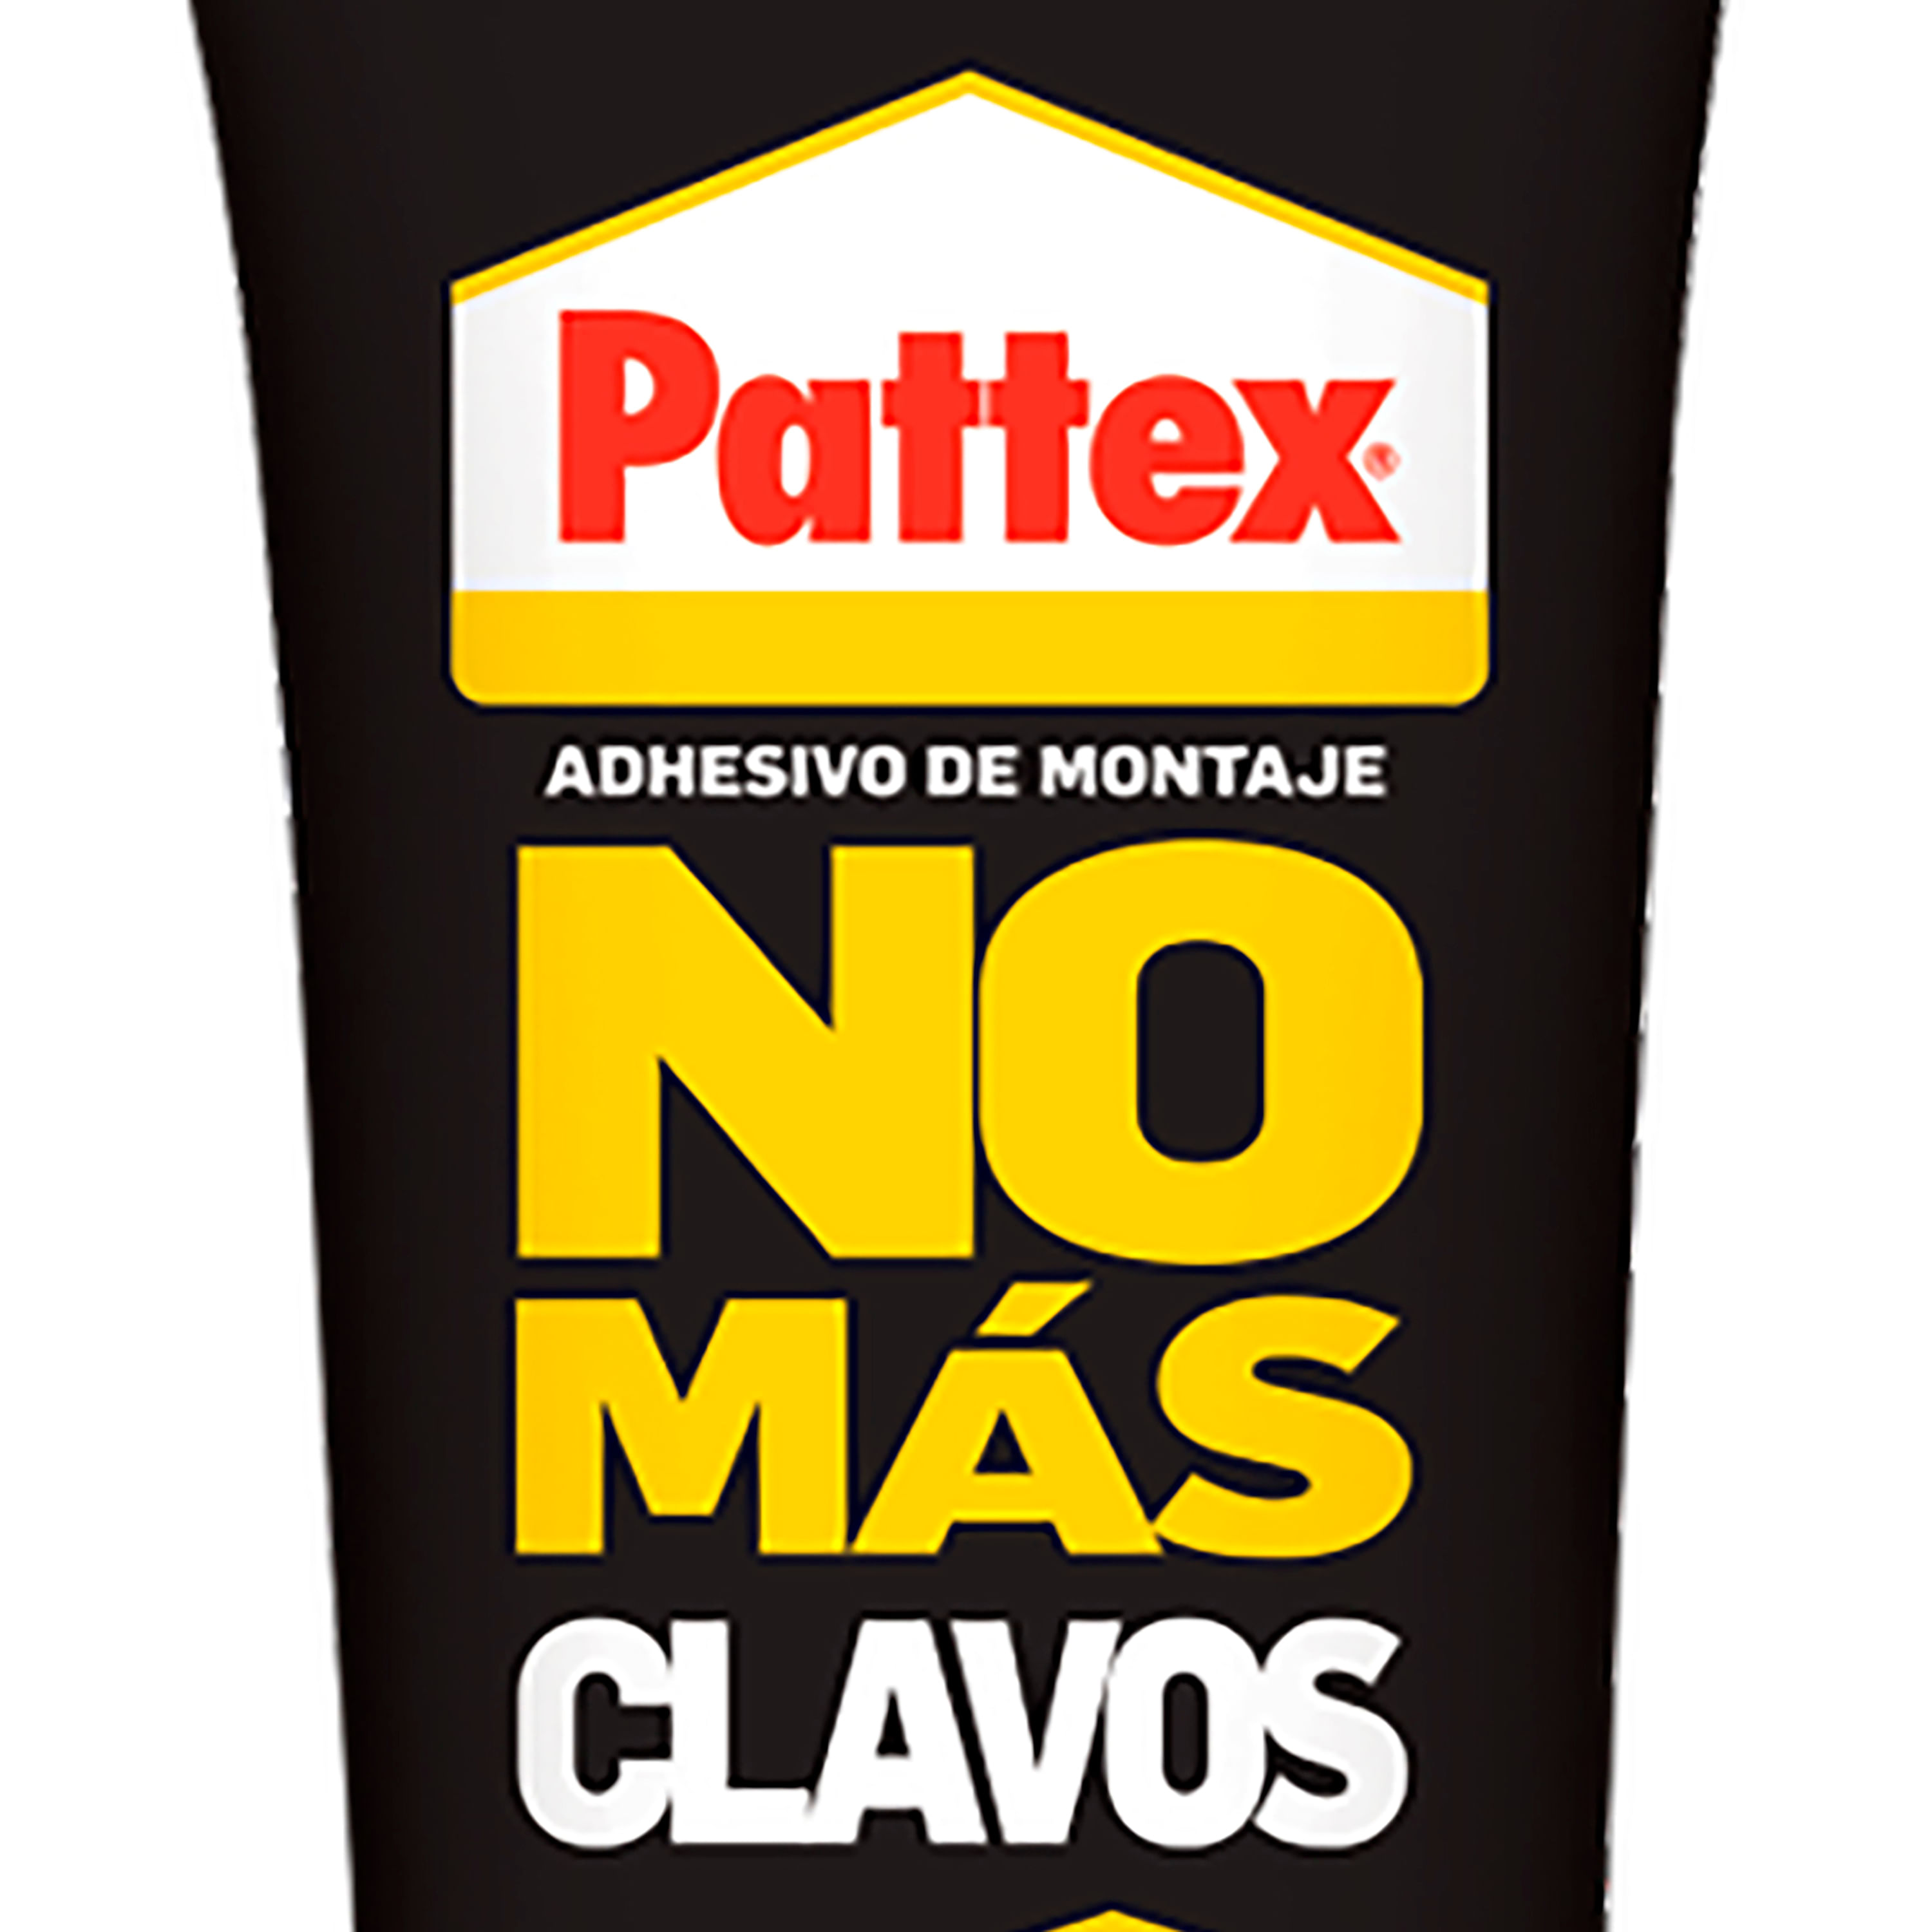 ADHESIVO DE MONTAJE PATTEX NO MAS CLAVOS TUBO 250 GR – 100997 – Tienda  online de Julian Celda S.L.